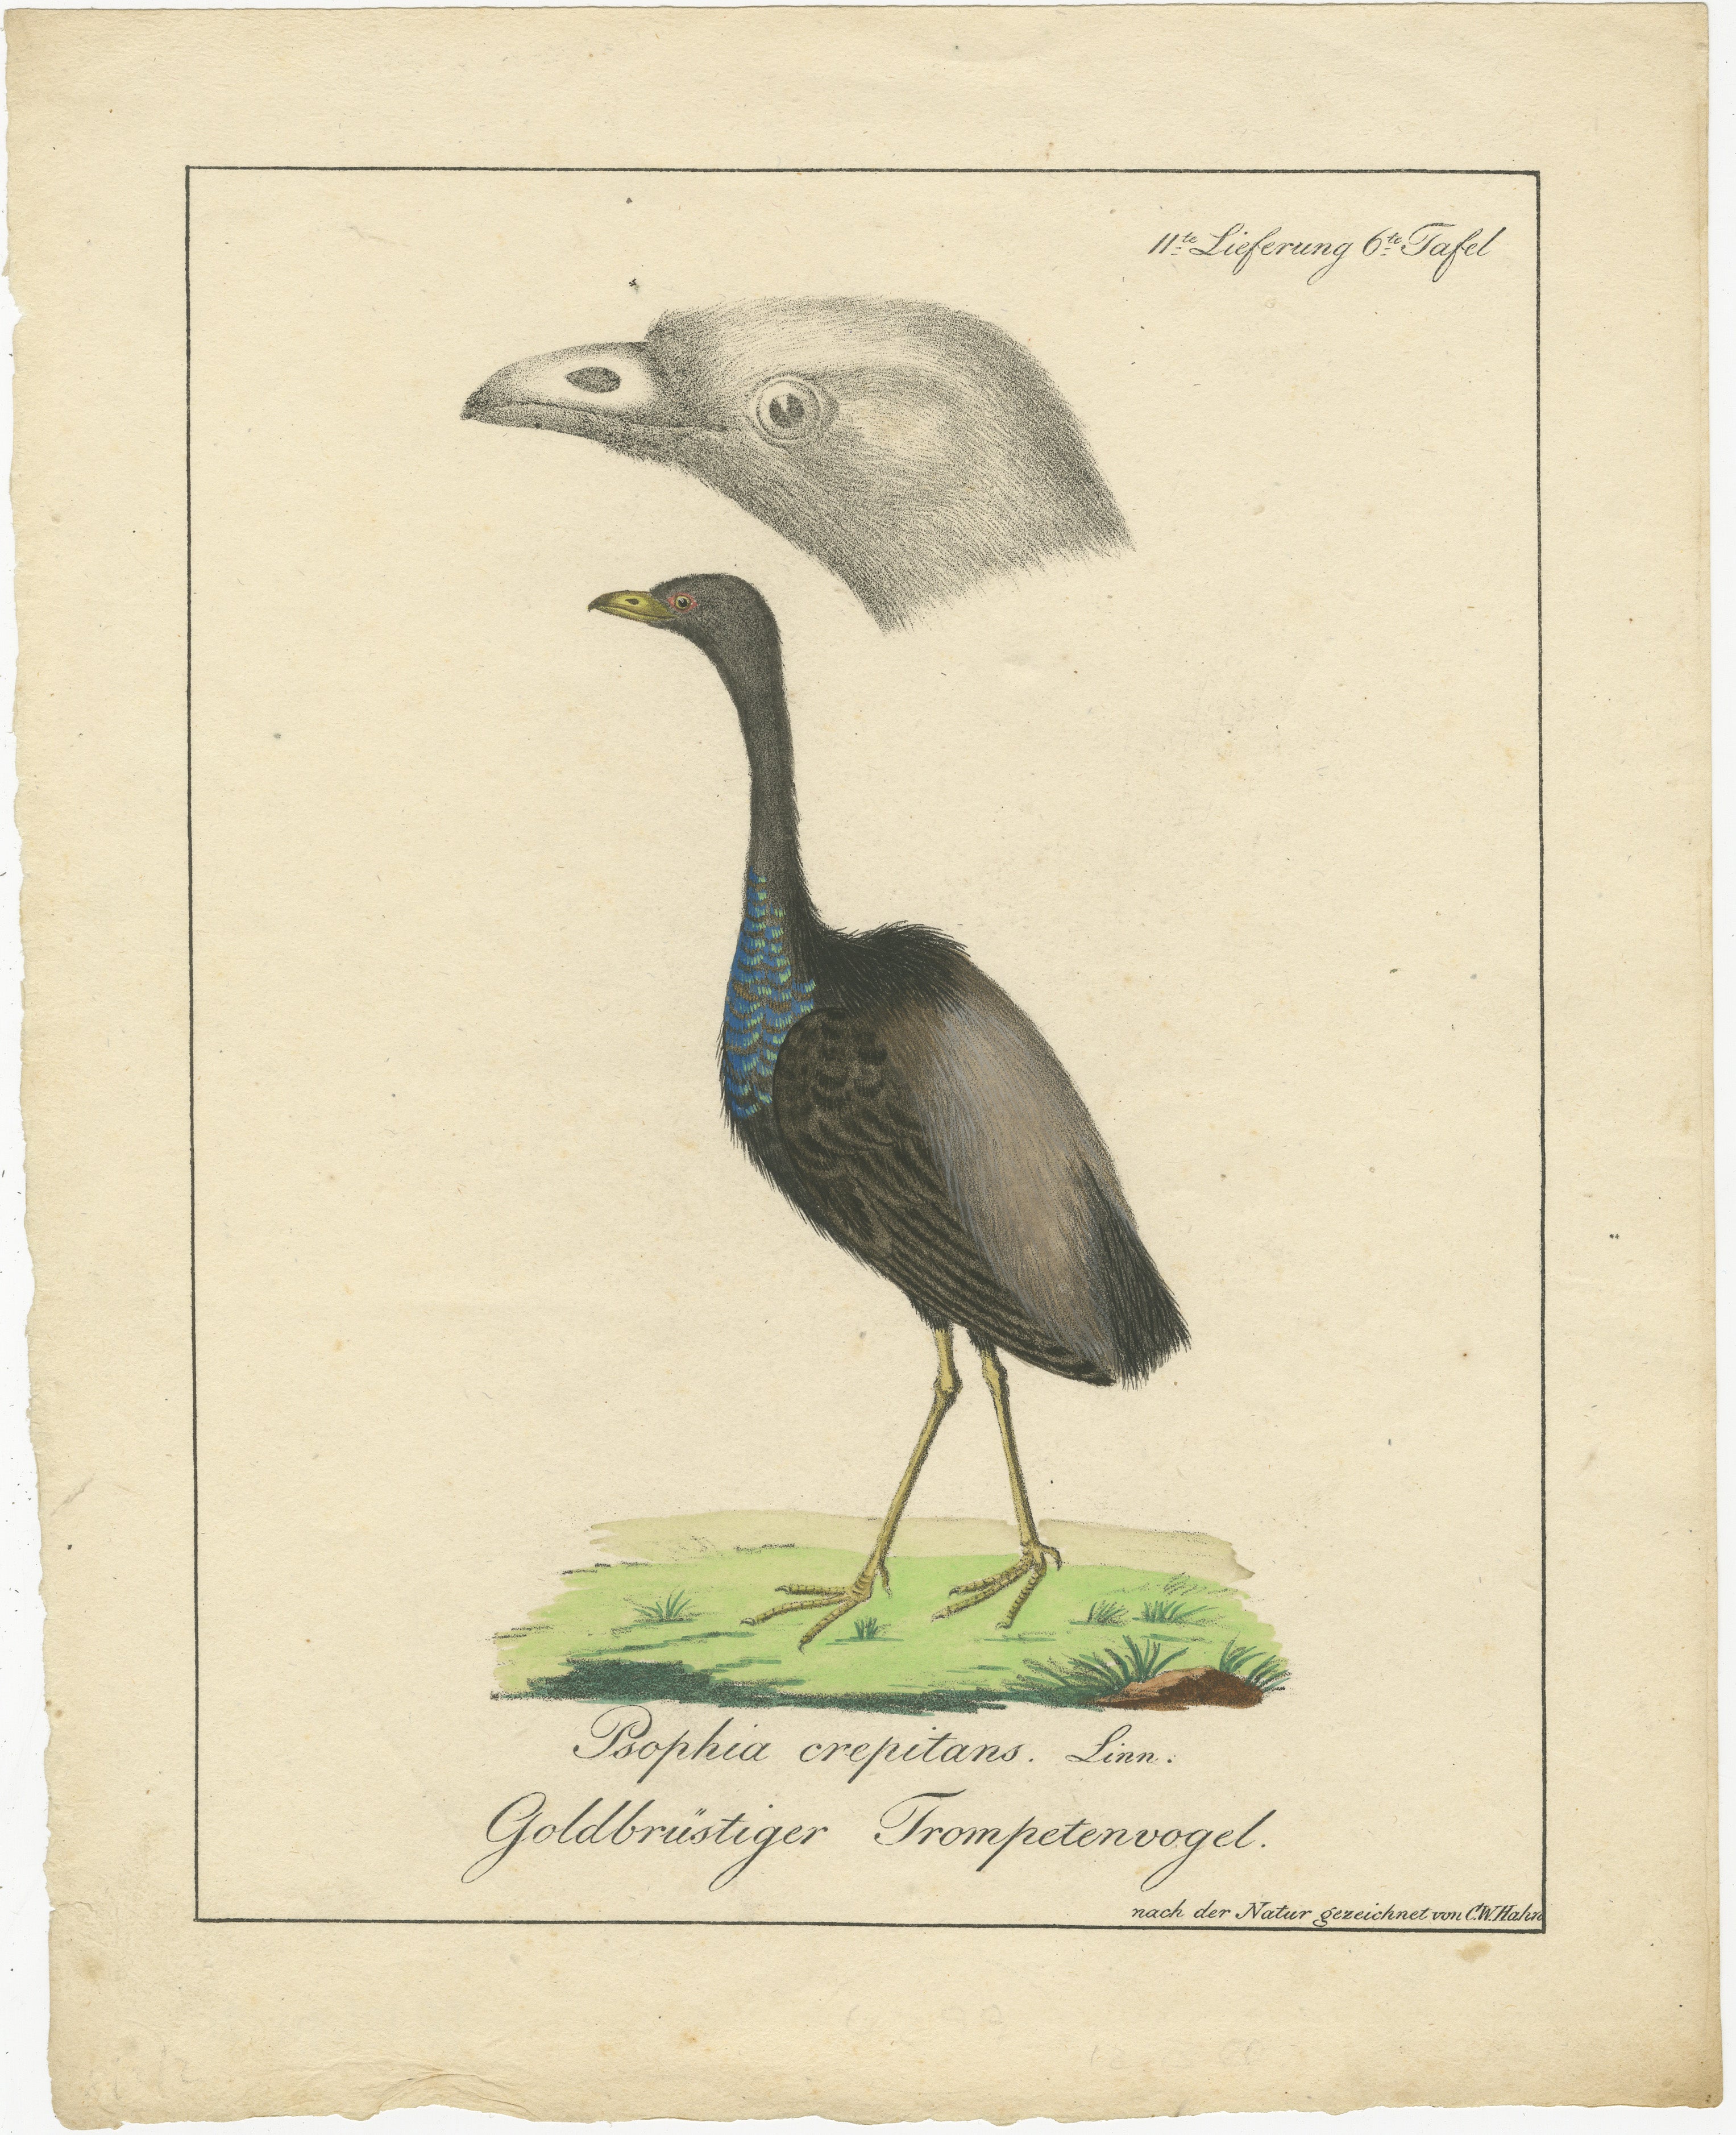 Cette estampe est une lithographie ancienne en couleurs de Carl Wilhelm Hahn datant d'environ 1820. Elle est répertoriée dans le catalogue bibliographique des livres de zoologie de Nissen, qui est référencé comme 